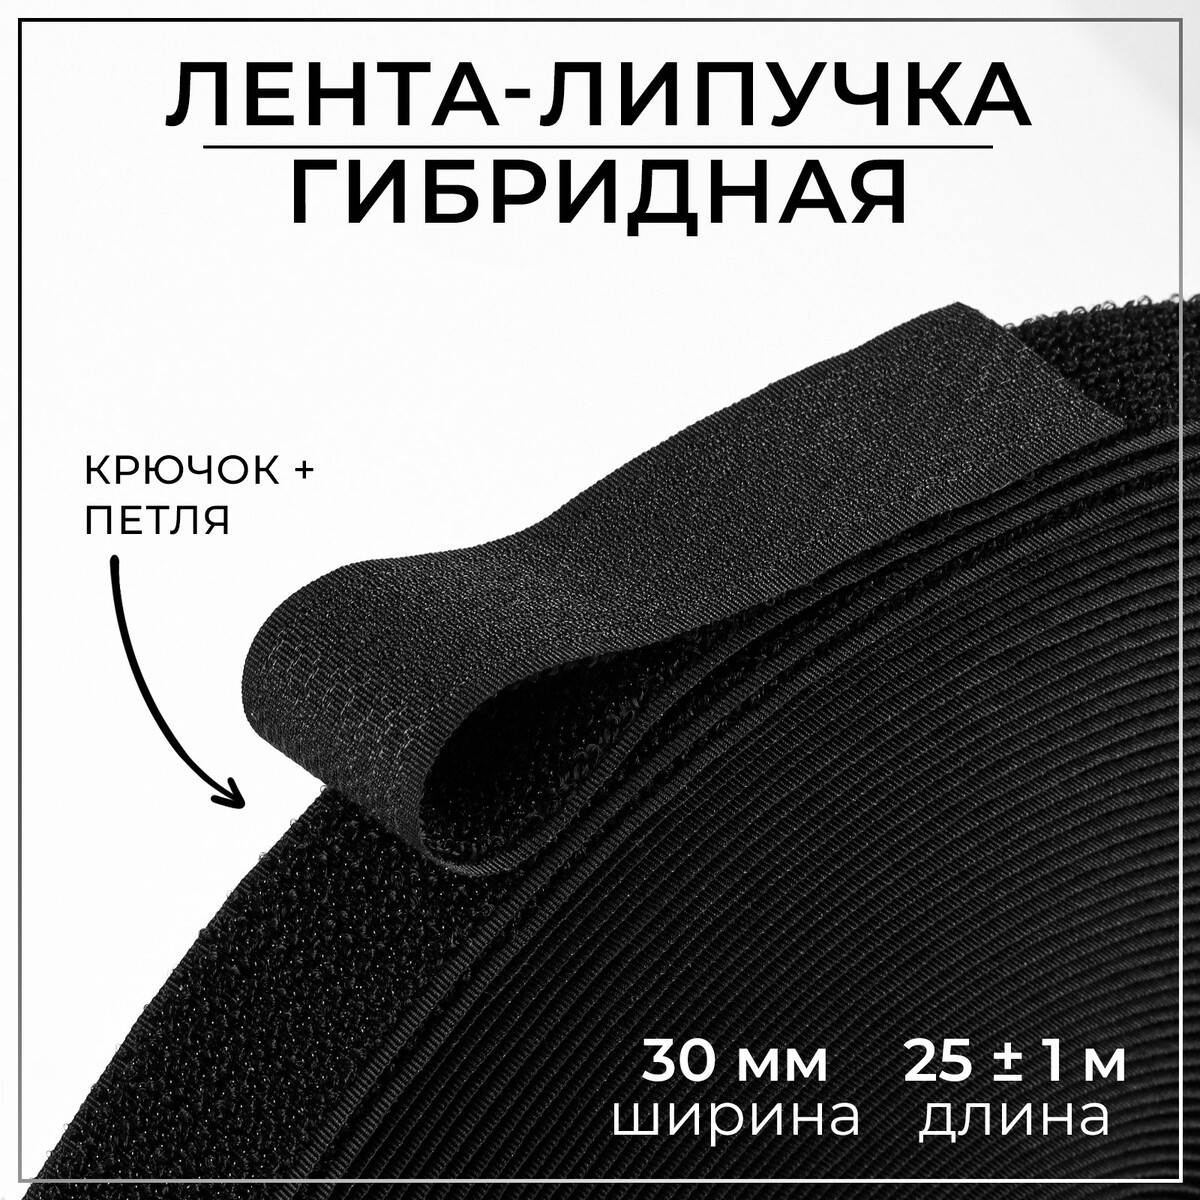 Липучка гибридная, 30 мм × 25 ± 1 м, цвет черный липучка 50 мм × 25 ± 1 м